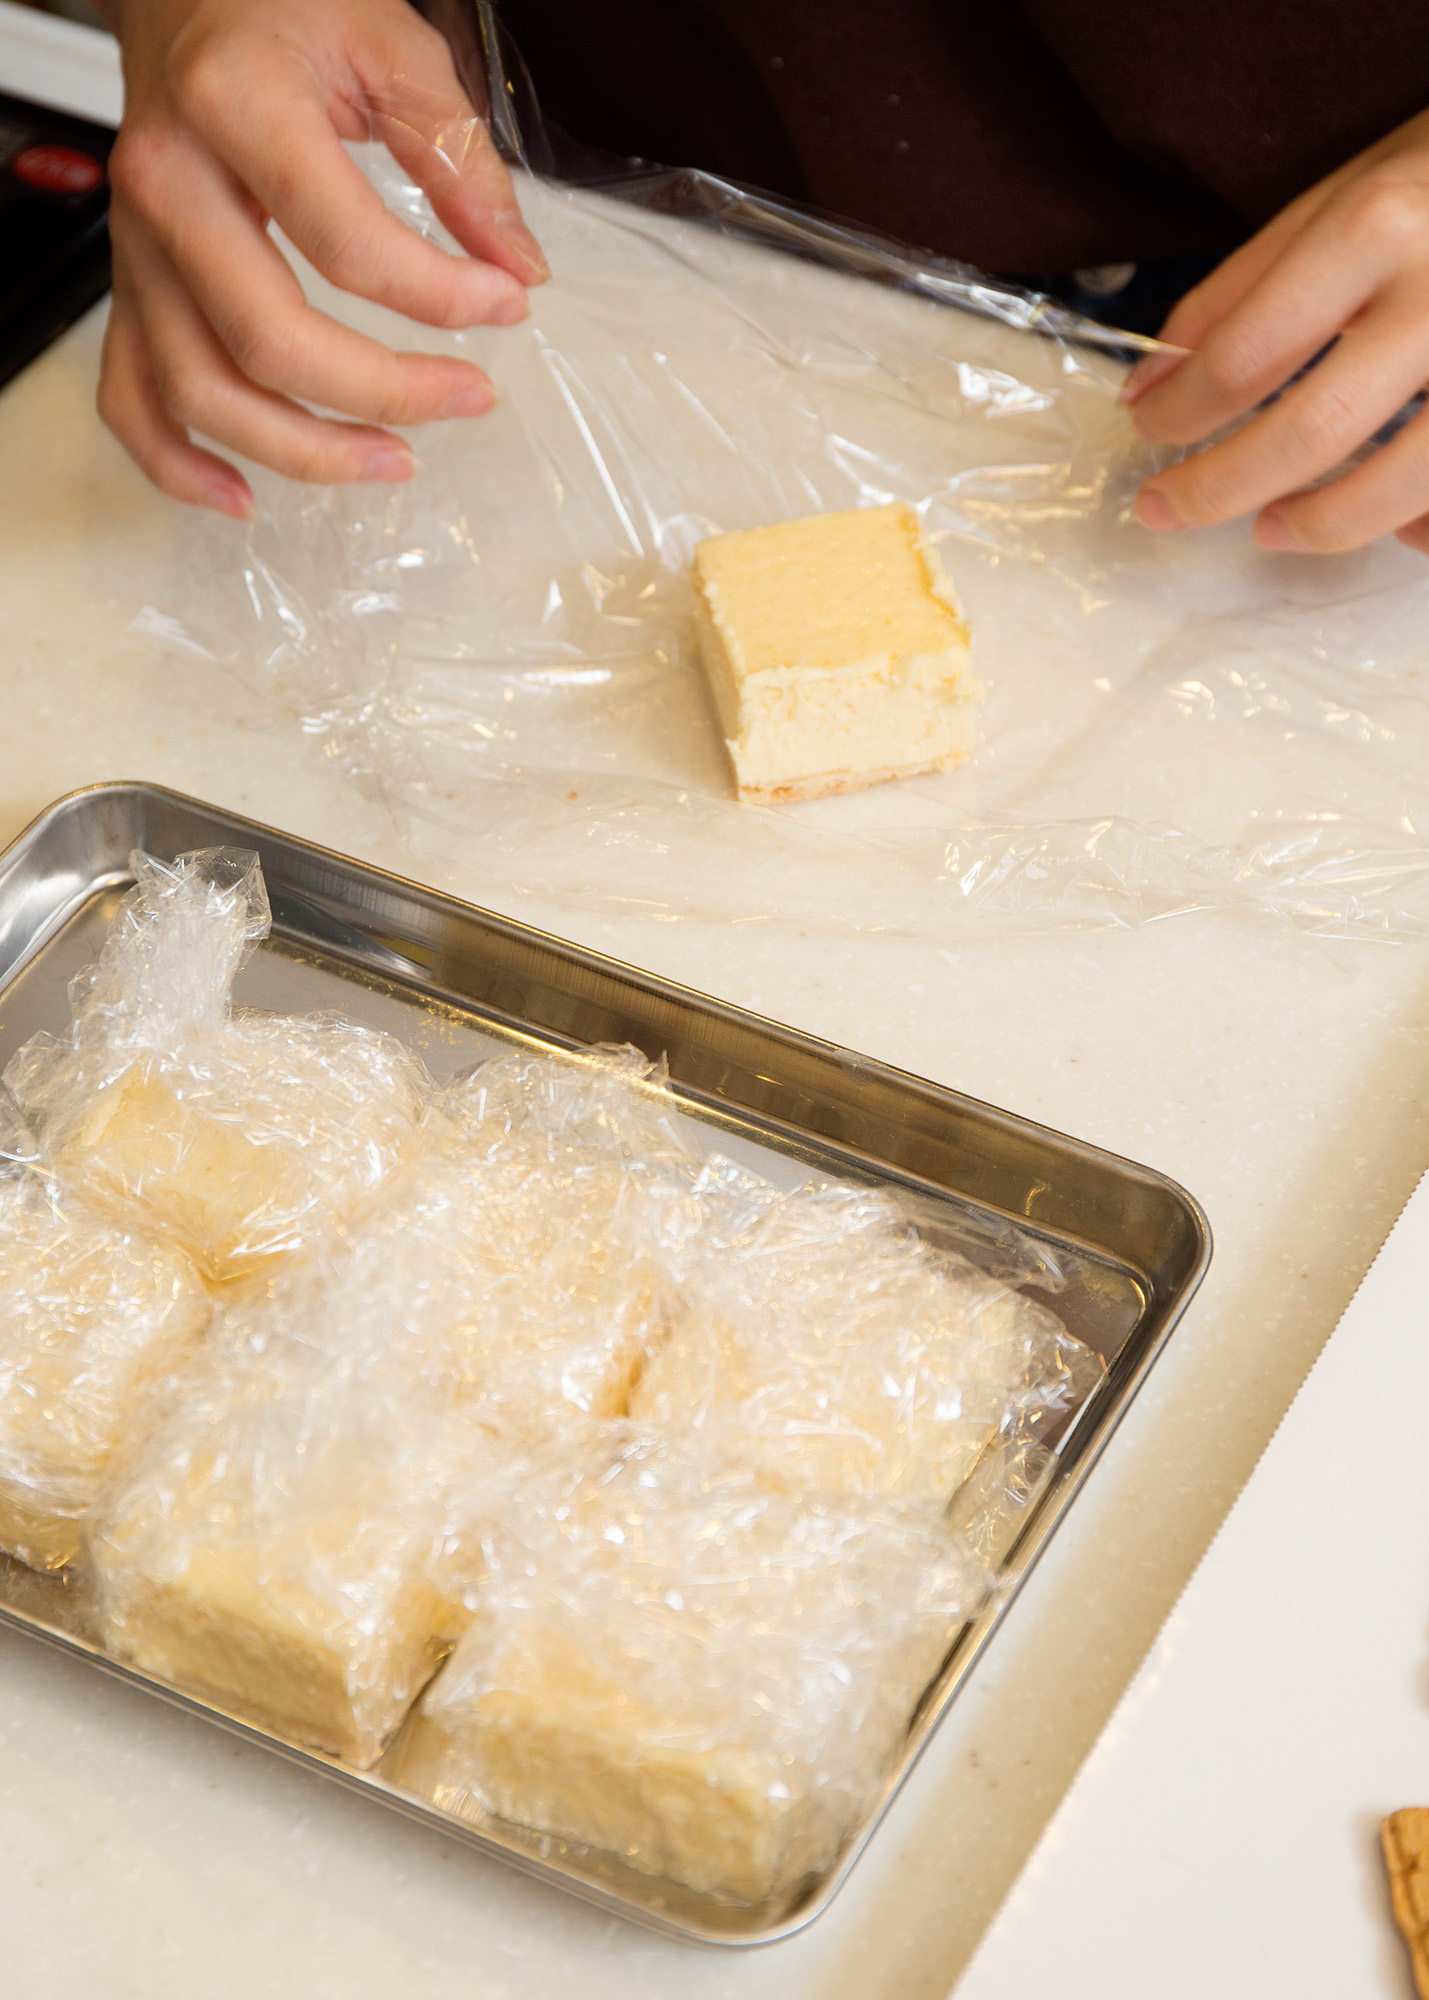 コストコのトリプルチーズタルト おすすめの切り方 食べ方4パターンと賢い冷凍保存のコツ グルメ スポット Mart マート 公式サイト 光文社